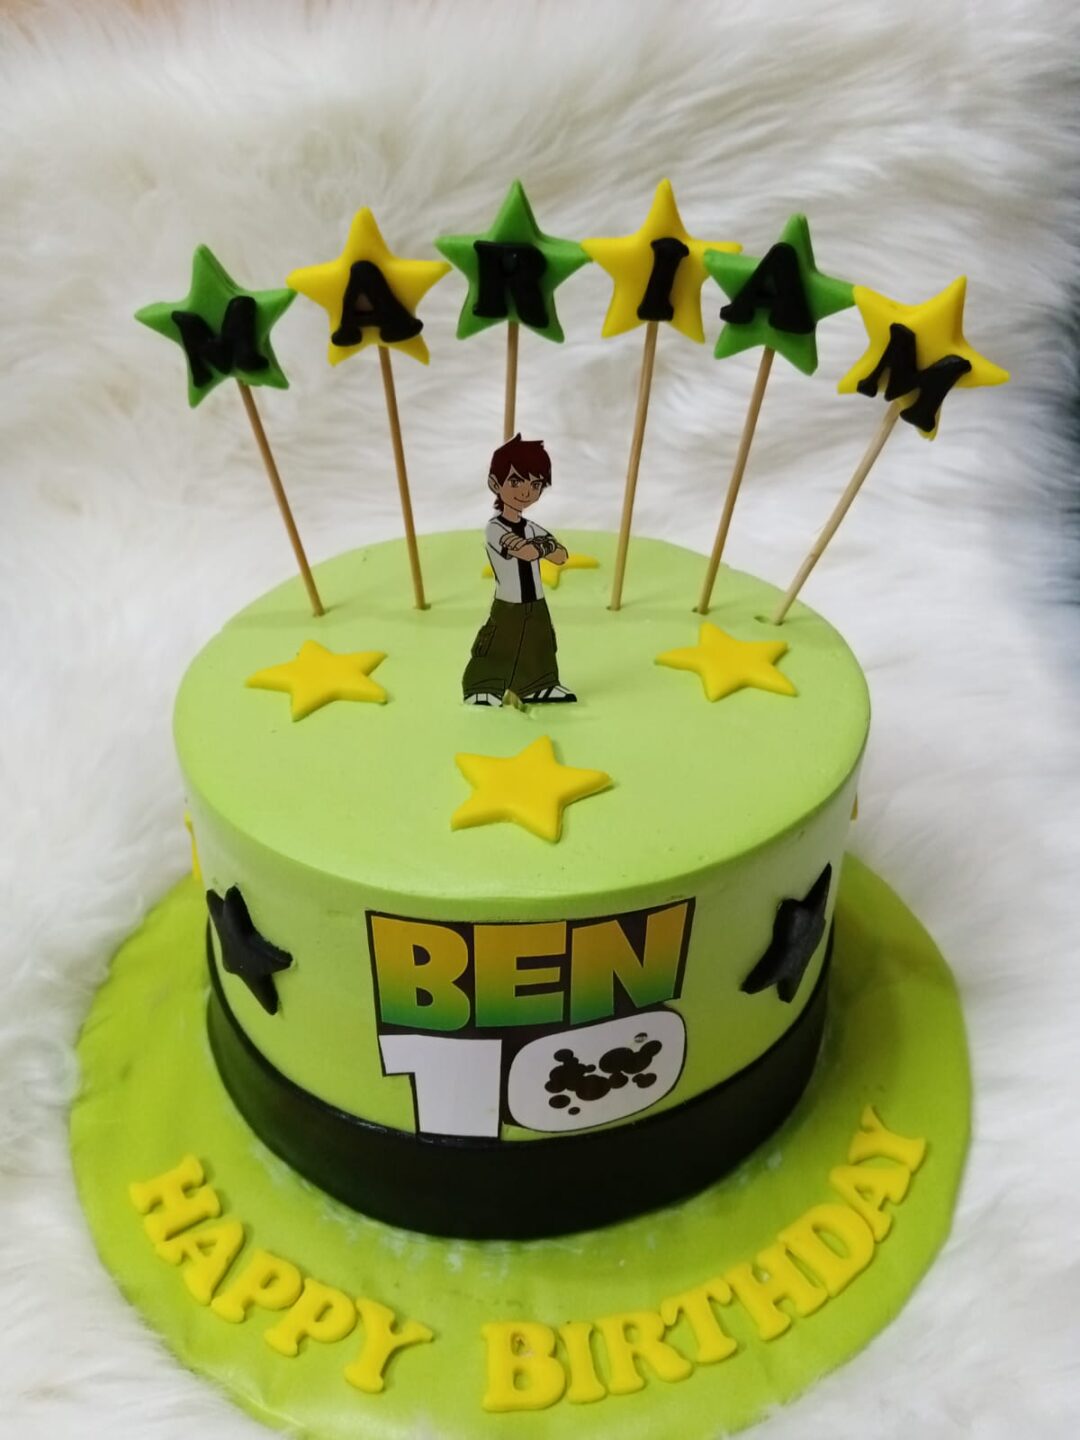 Ben 10 theme cake